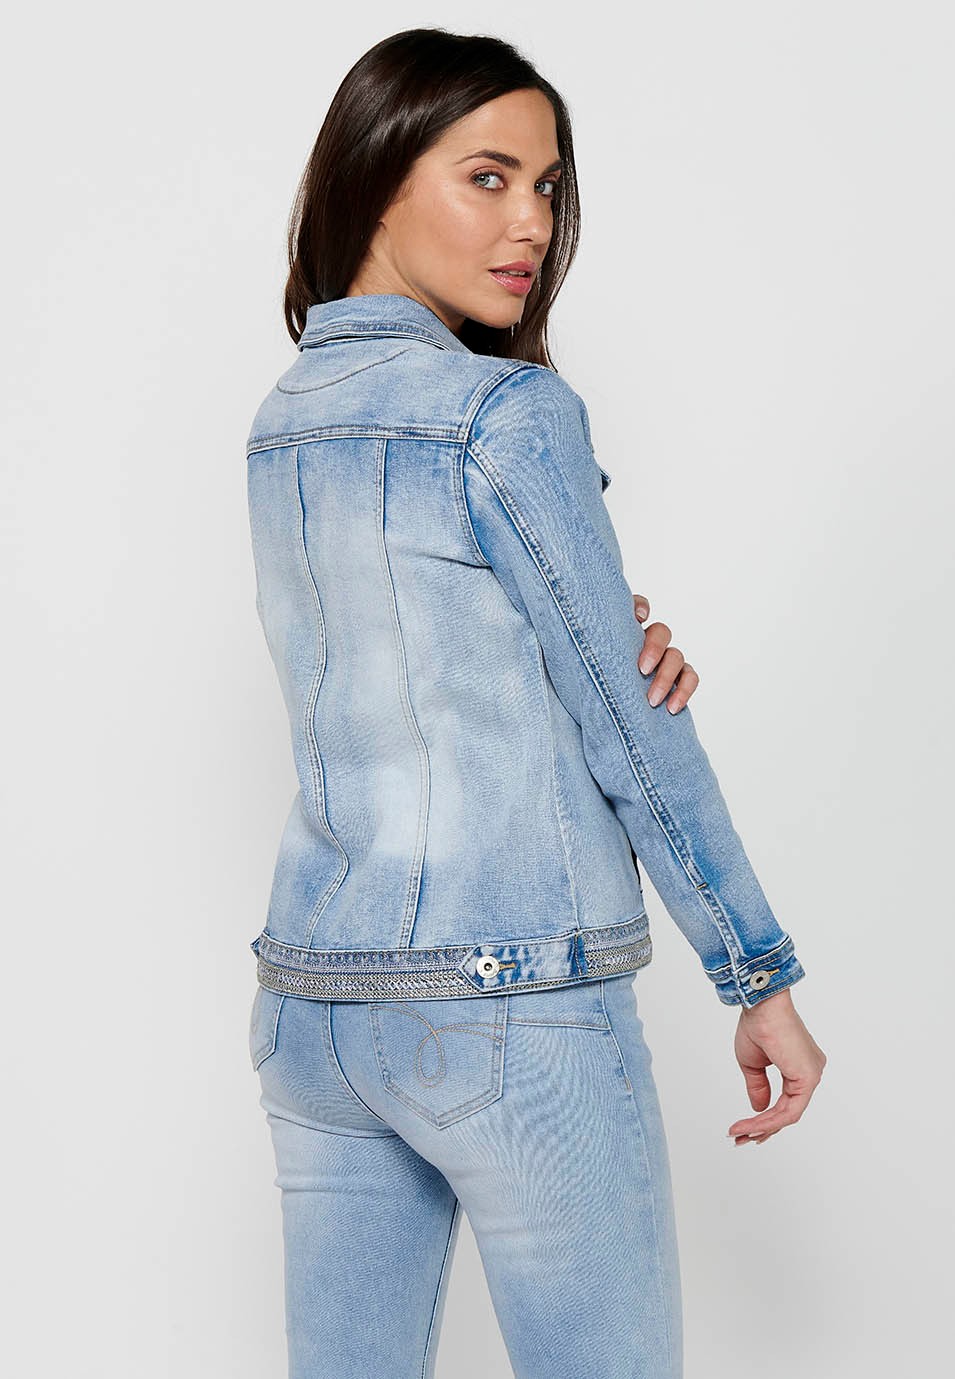 Jeansjacke mit Frontverschluss mit Knöpfen und Hemdkragen mit Taschen und gestickten Details in Hellblau für Damen 6